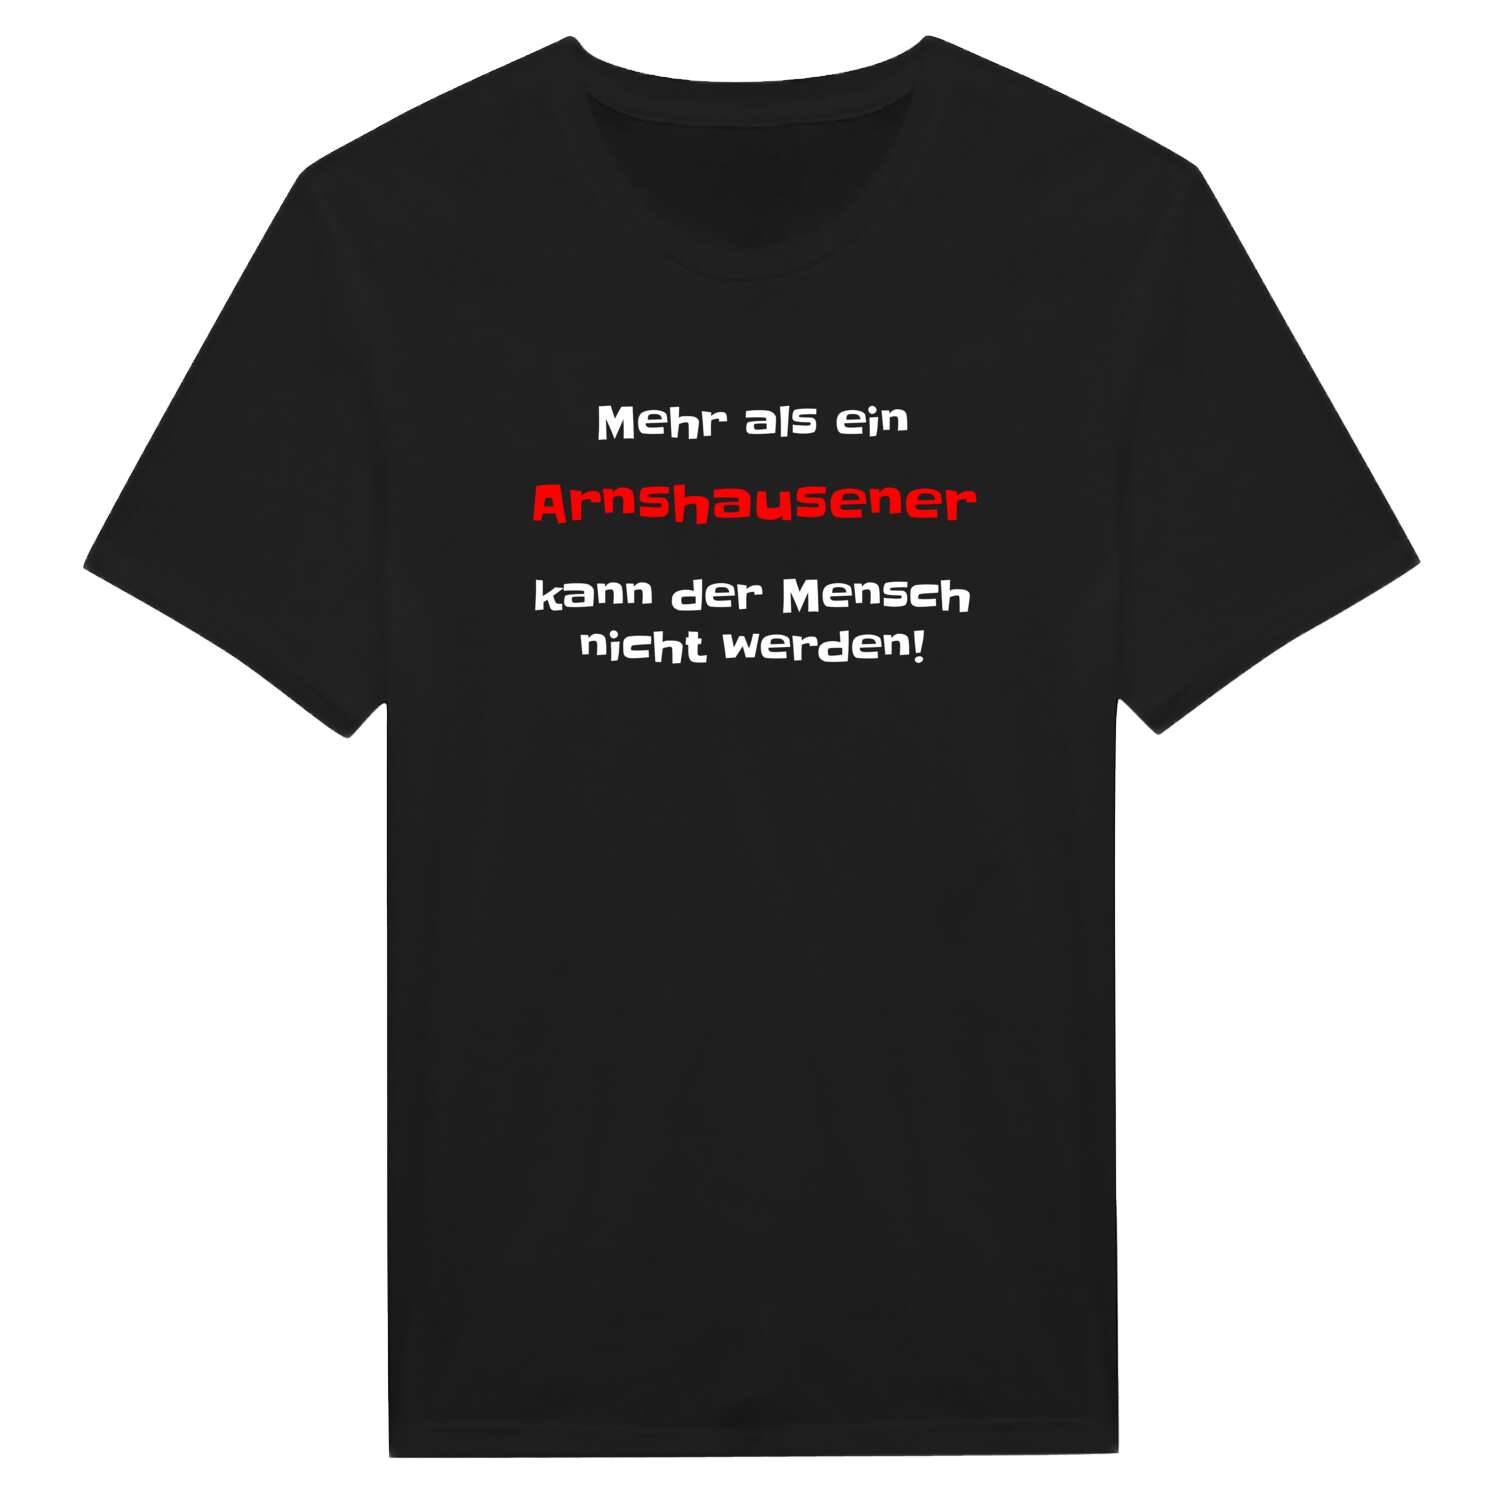 Arnshausen T-Shirt »Mehr als ein«